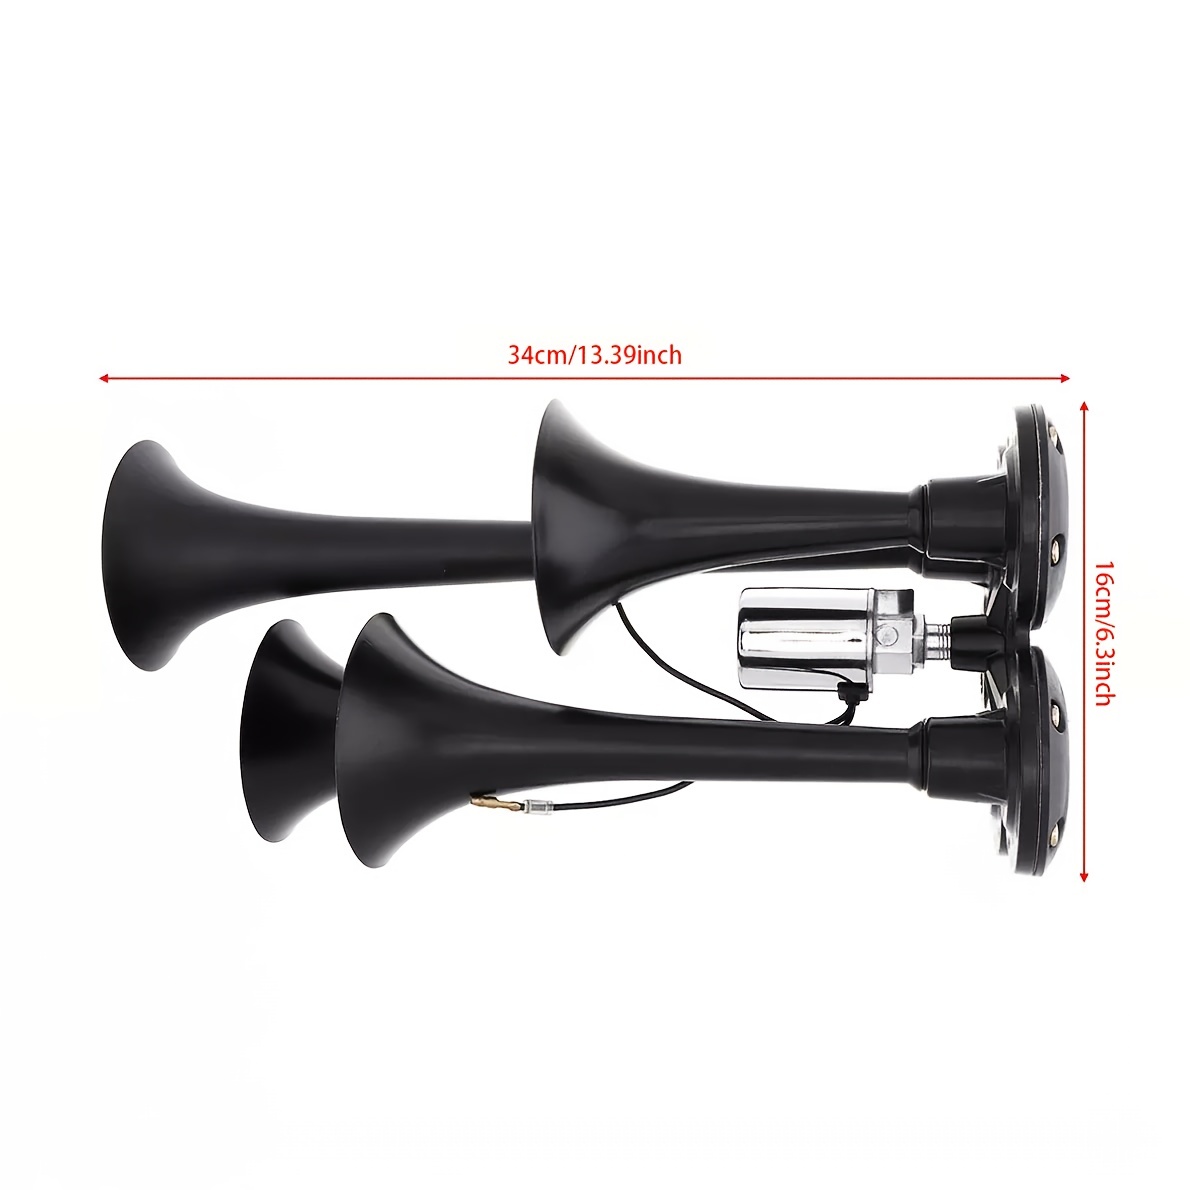 12V/24V Dual Trumpet Electric Horn Loud Chrome Air Horn Speaker